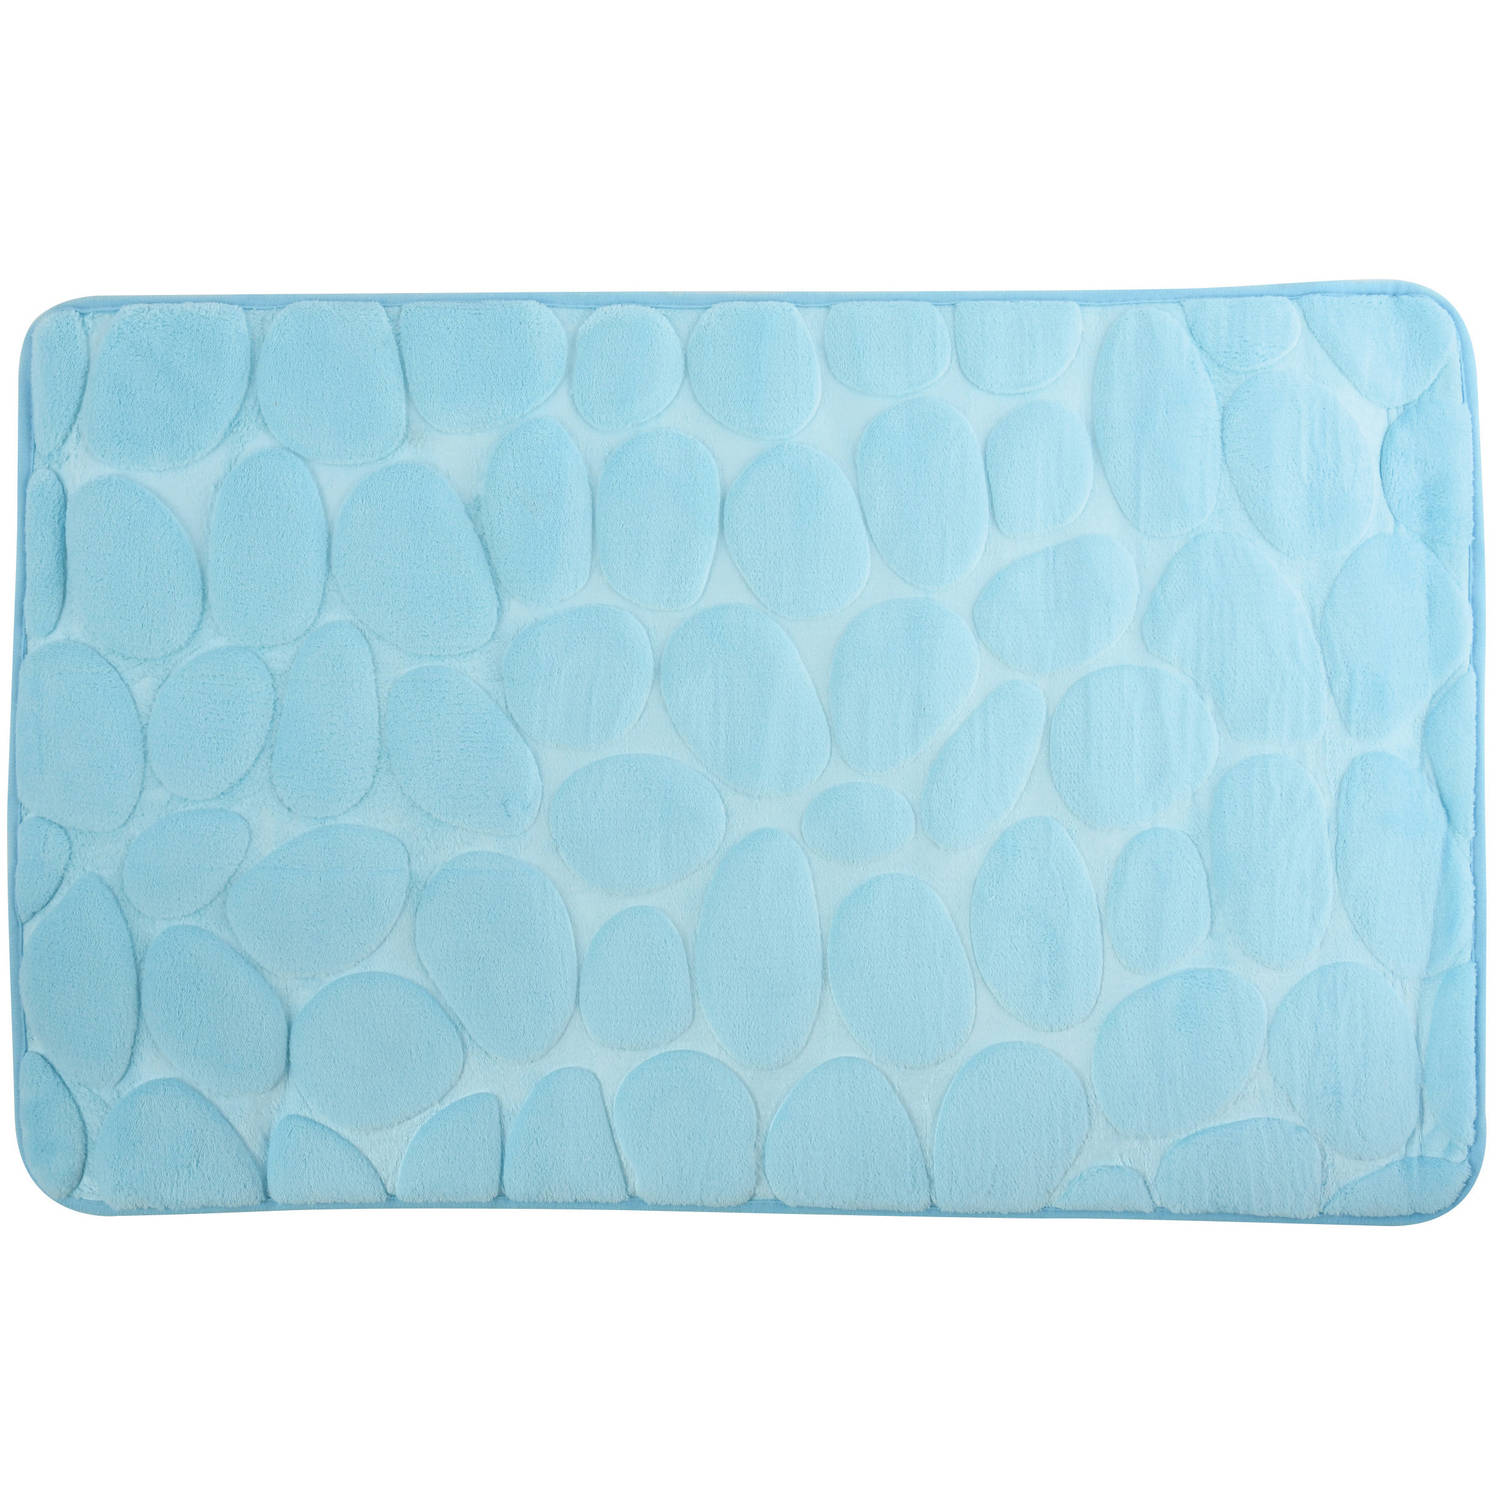 Badkamerkleedje-badmat tapijt kiezel motief vloermat lichtblauw 50 x 80 cm laagpolig Badmatjes